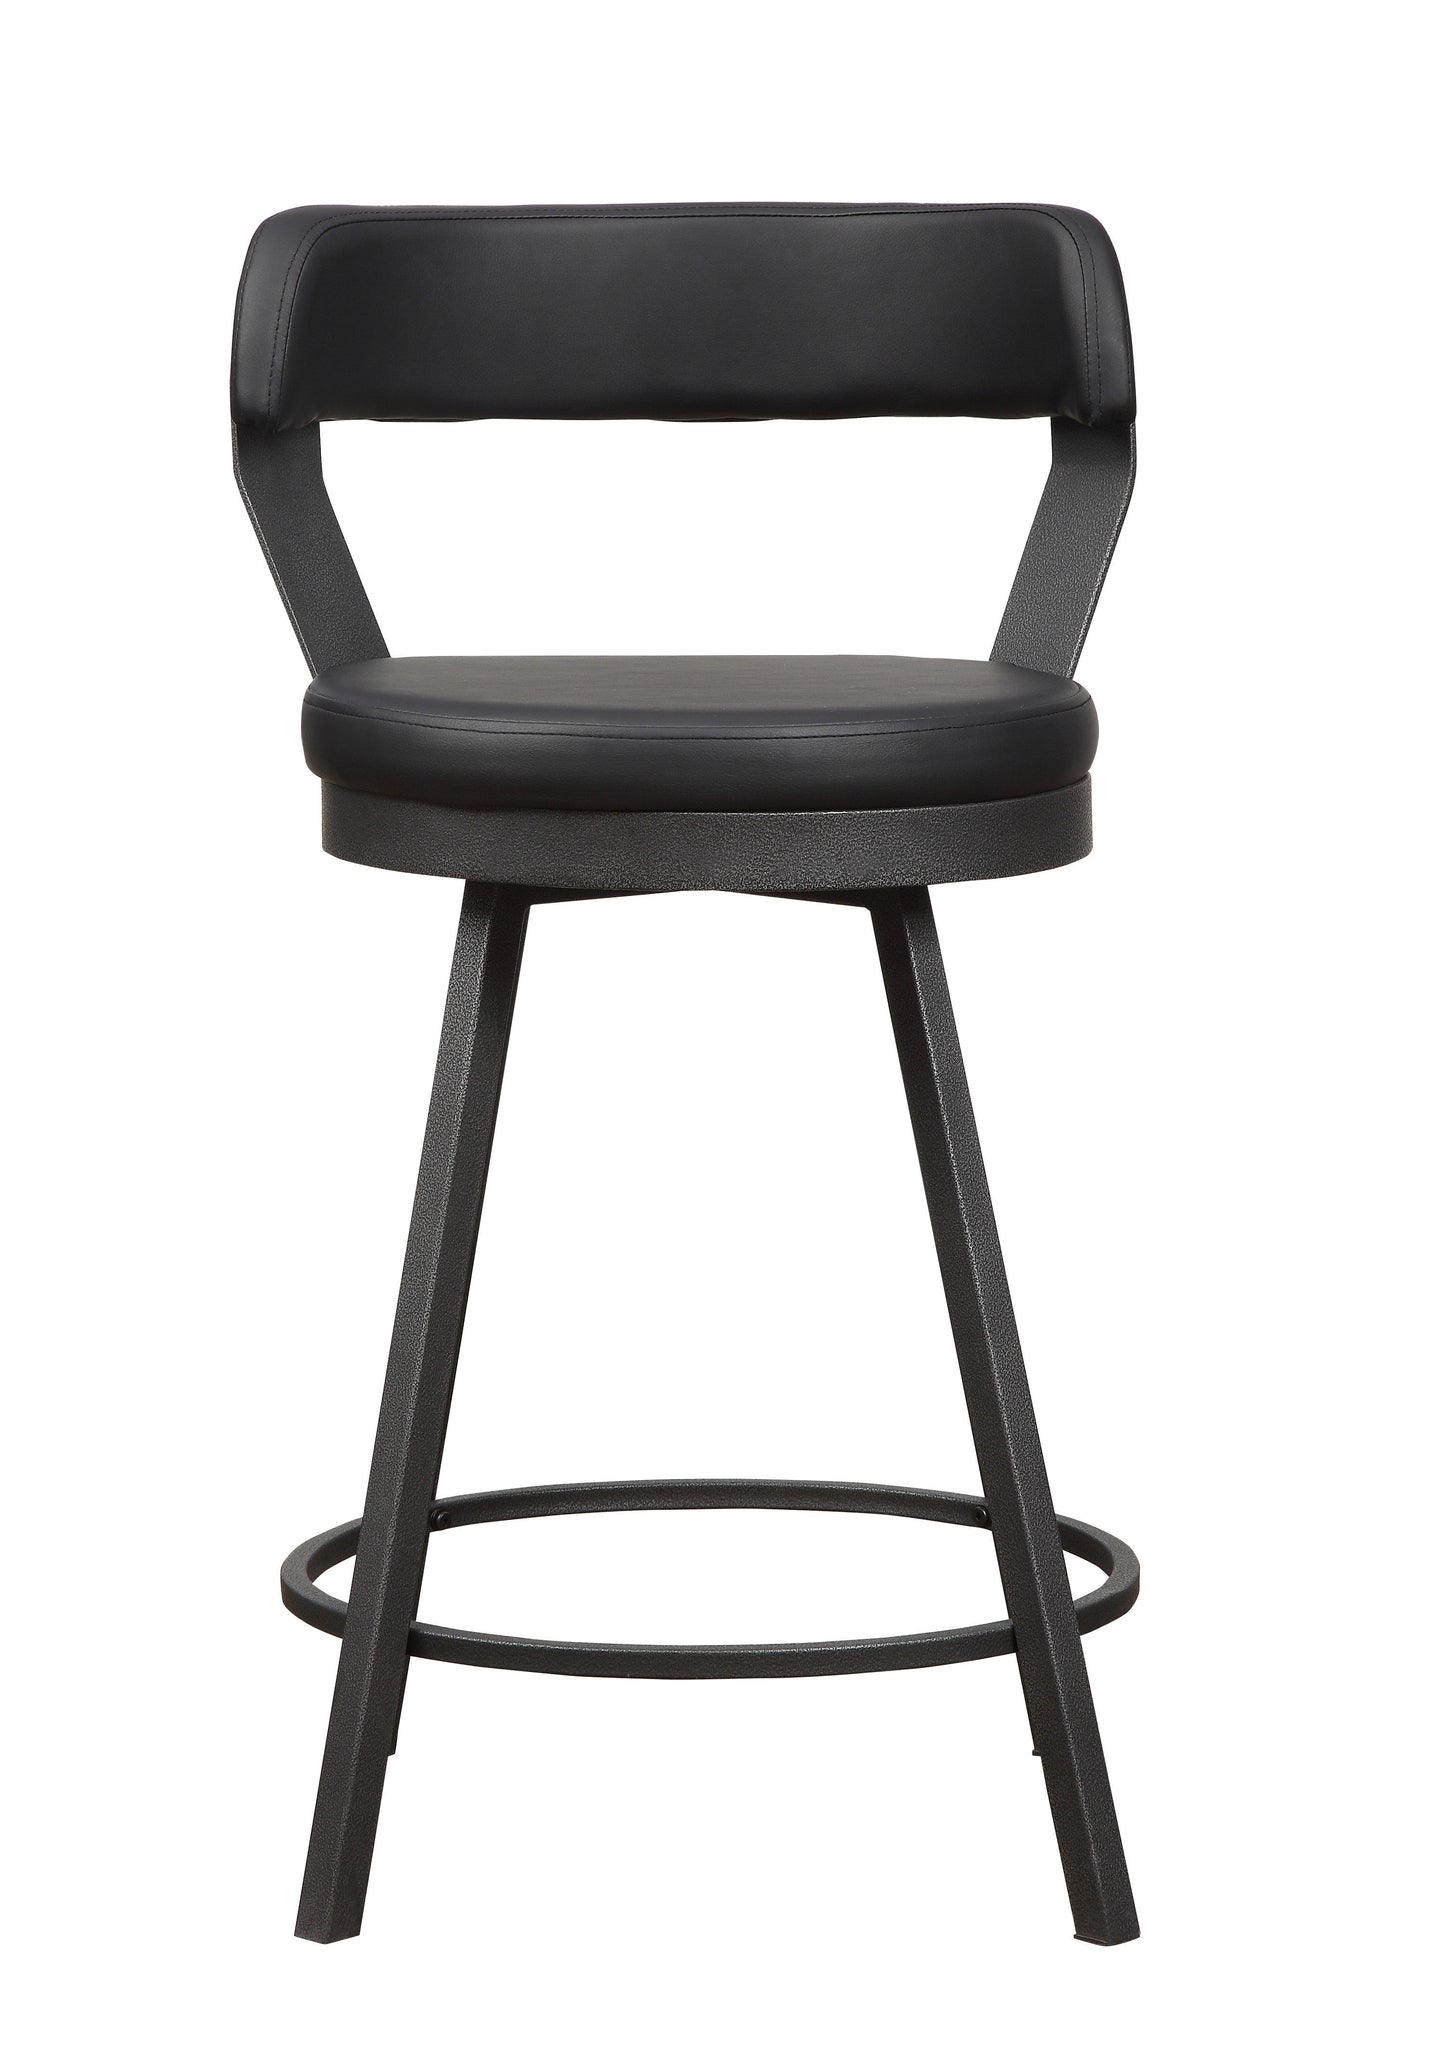 Appert Black/Dark Gray Swivel Counter Chair, Set of 2